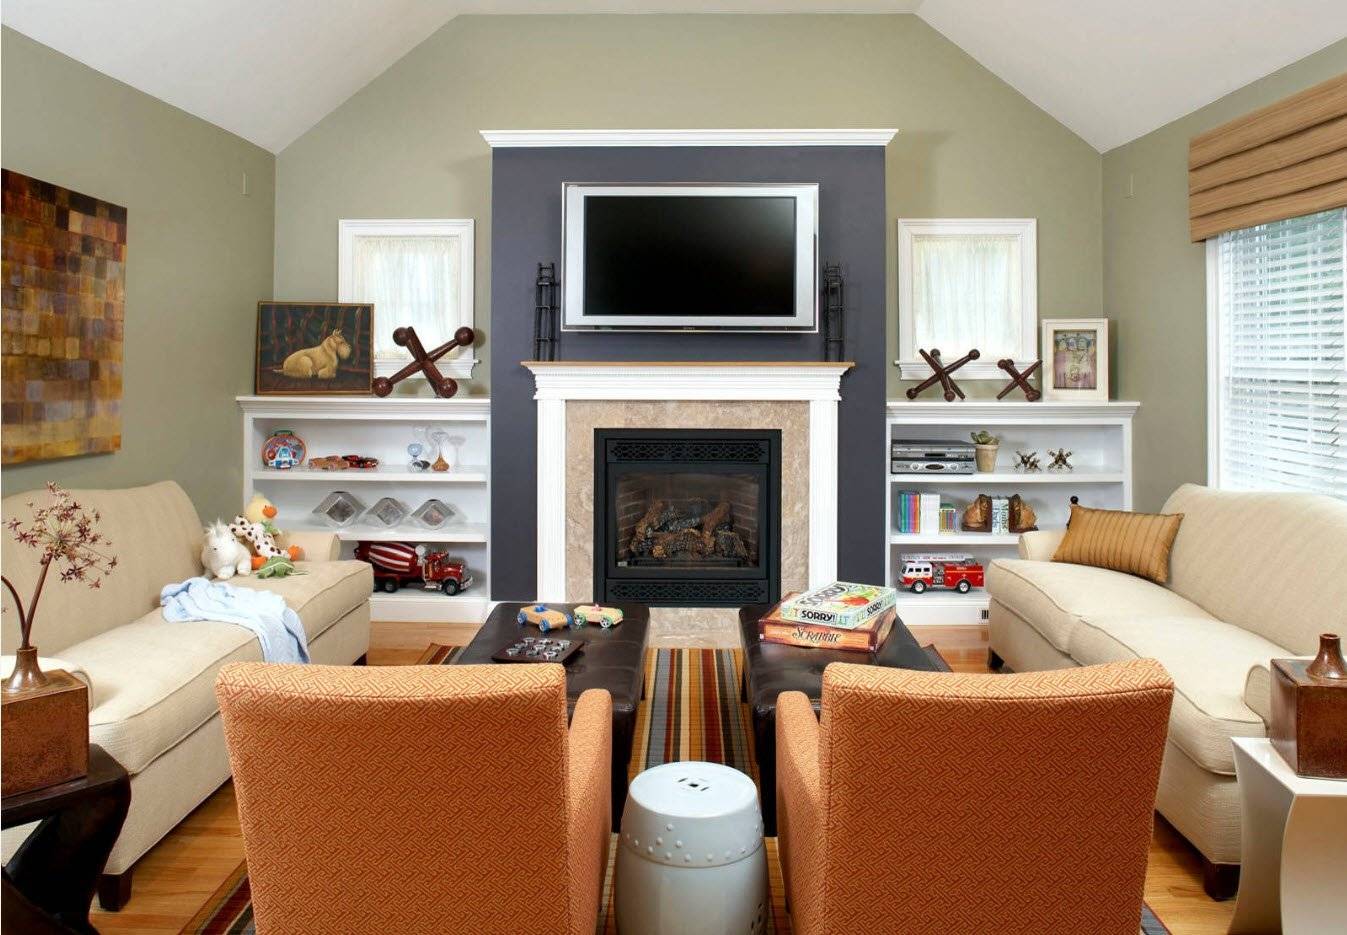 Телевизор над камином в интерьере гостиной: фото подборка идей дизайна